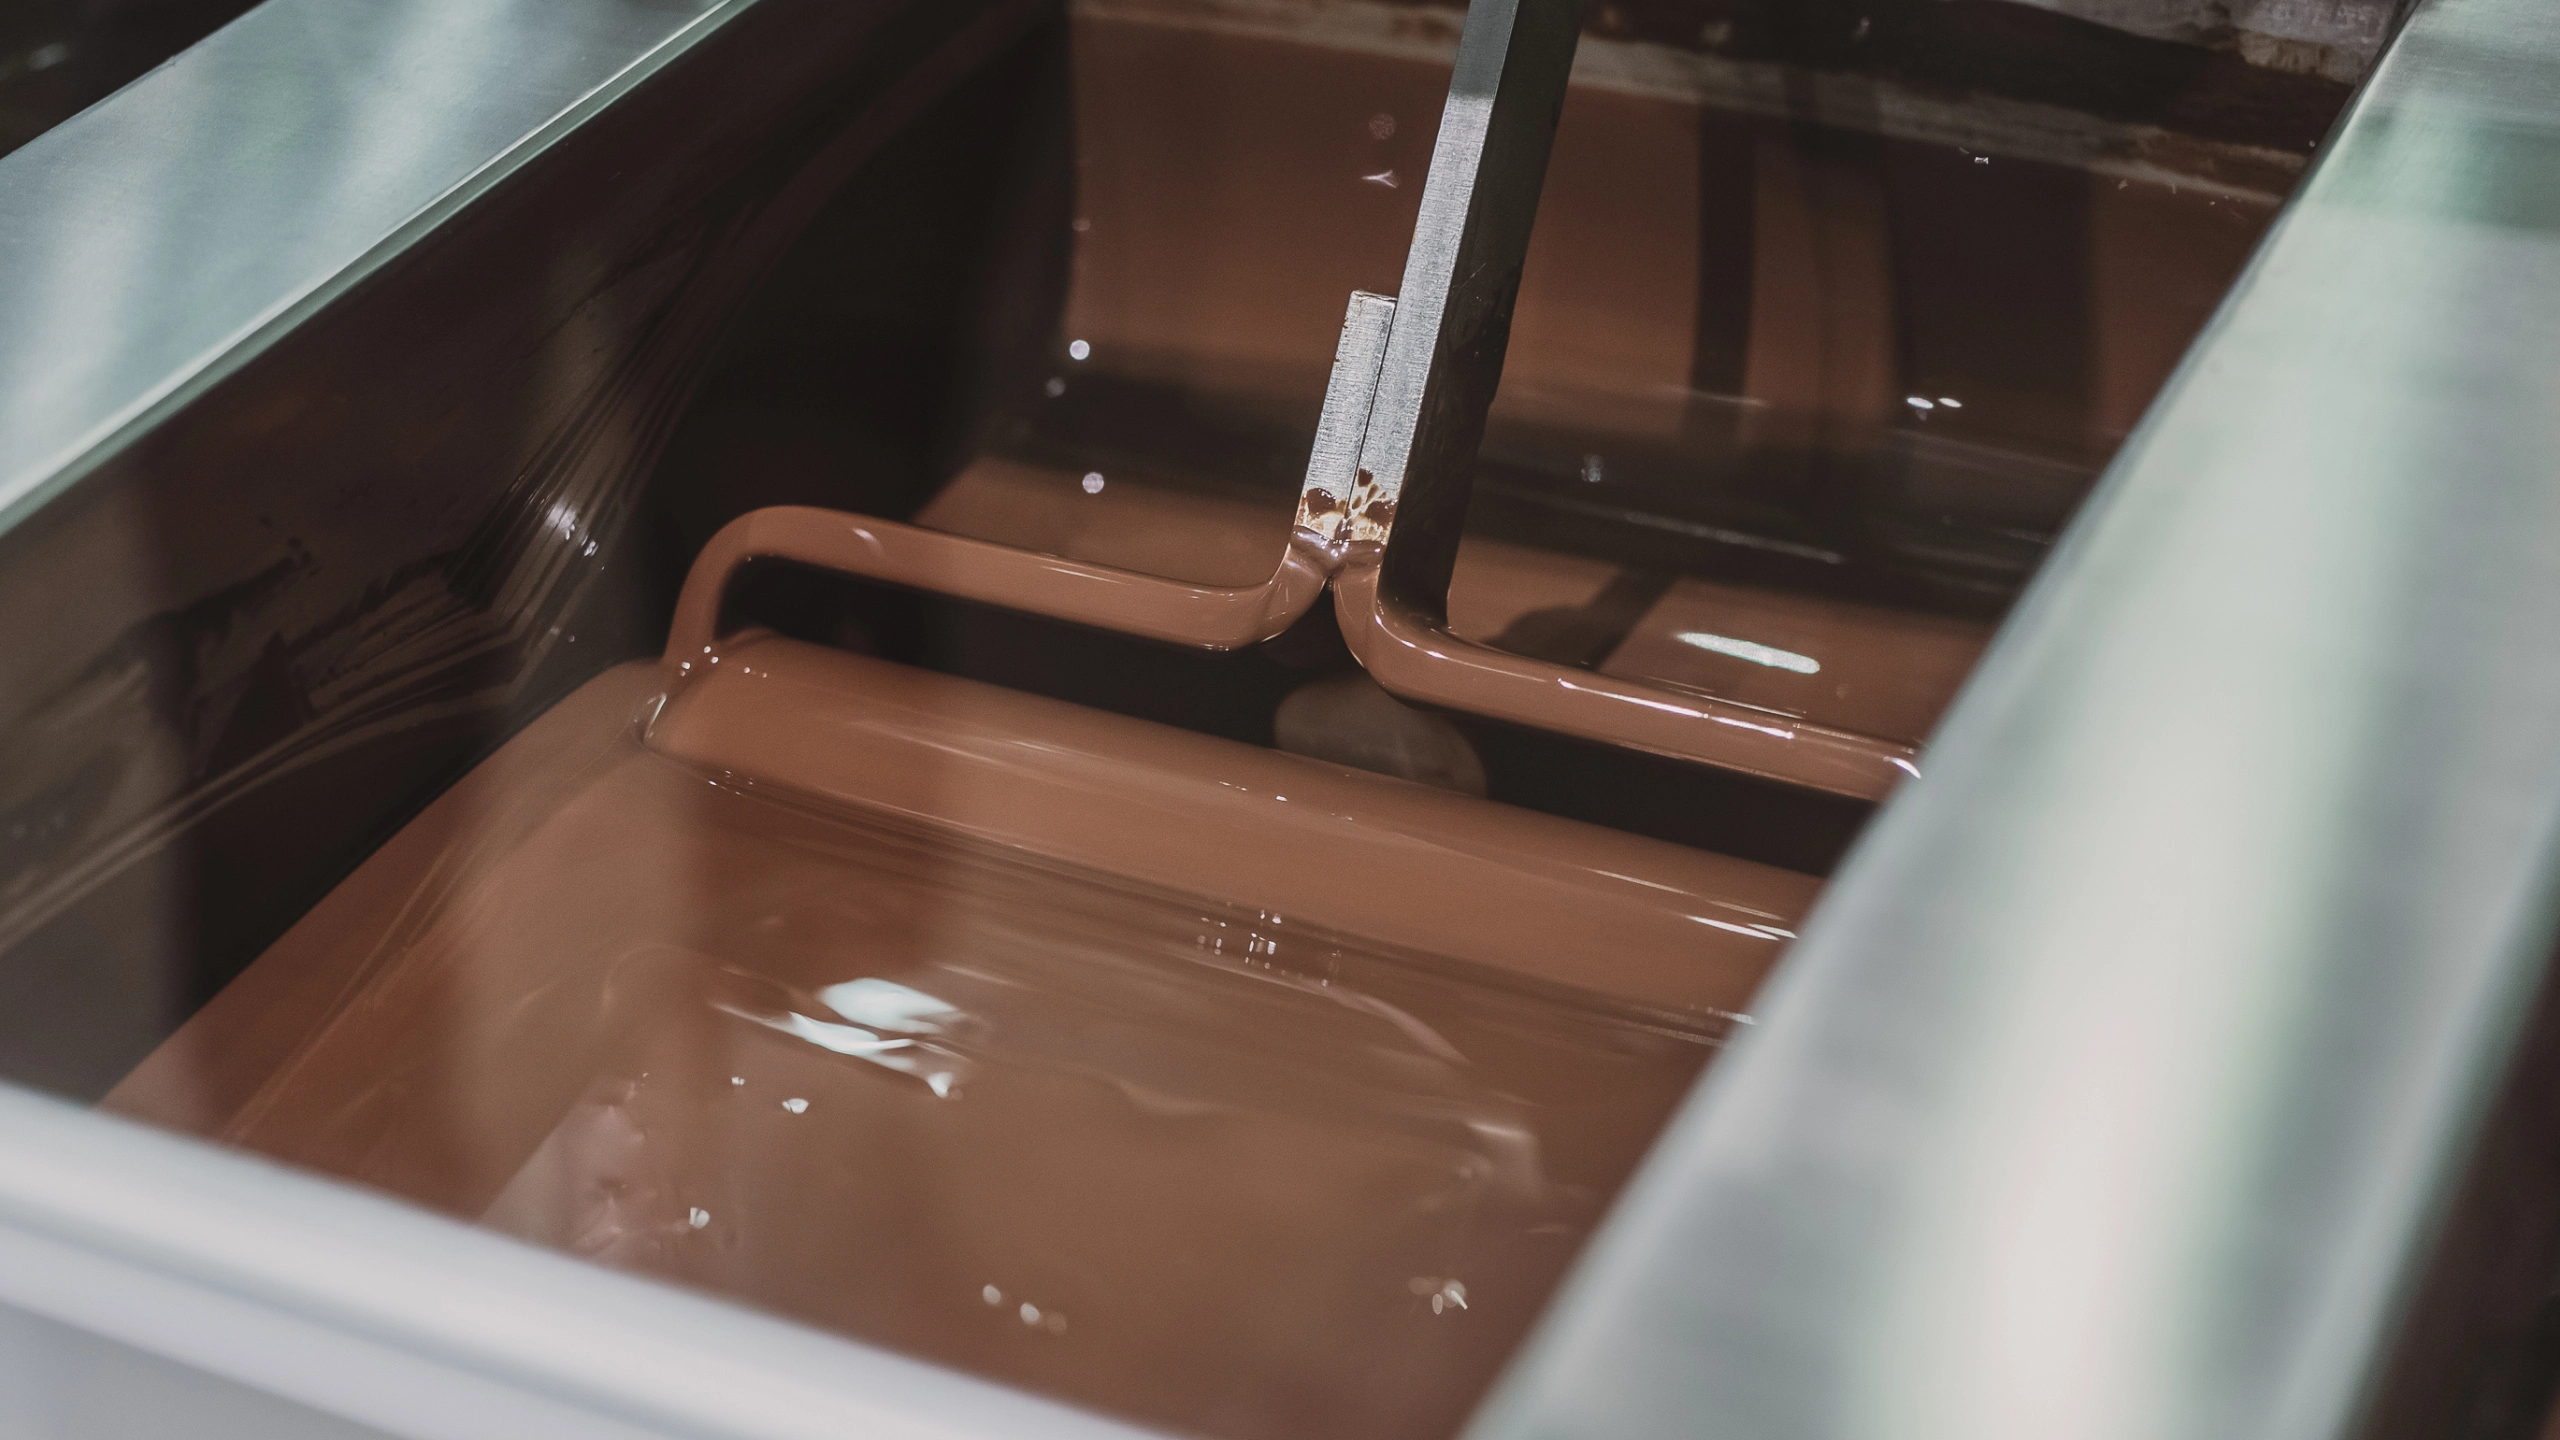 Deux ouvriers de l’usine de Mars secourus après être tombés dans un bol de chocolat géant